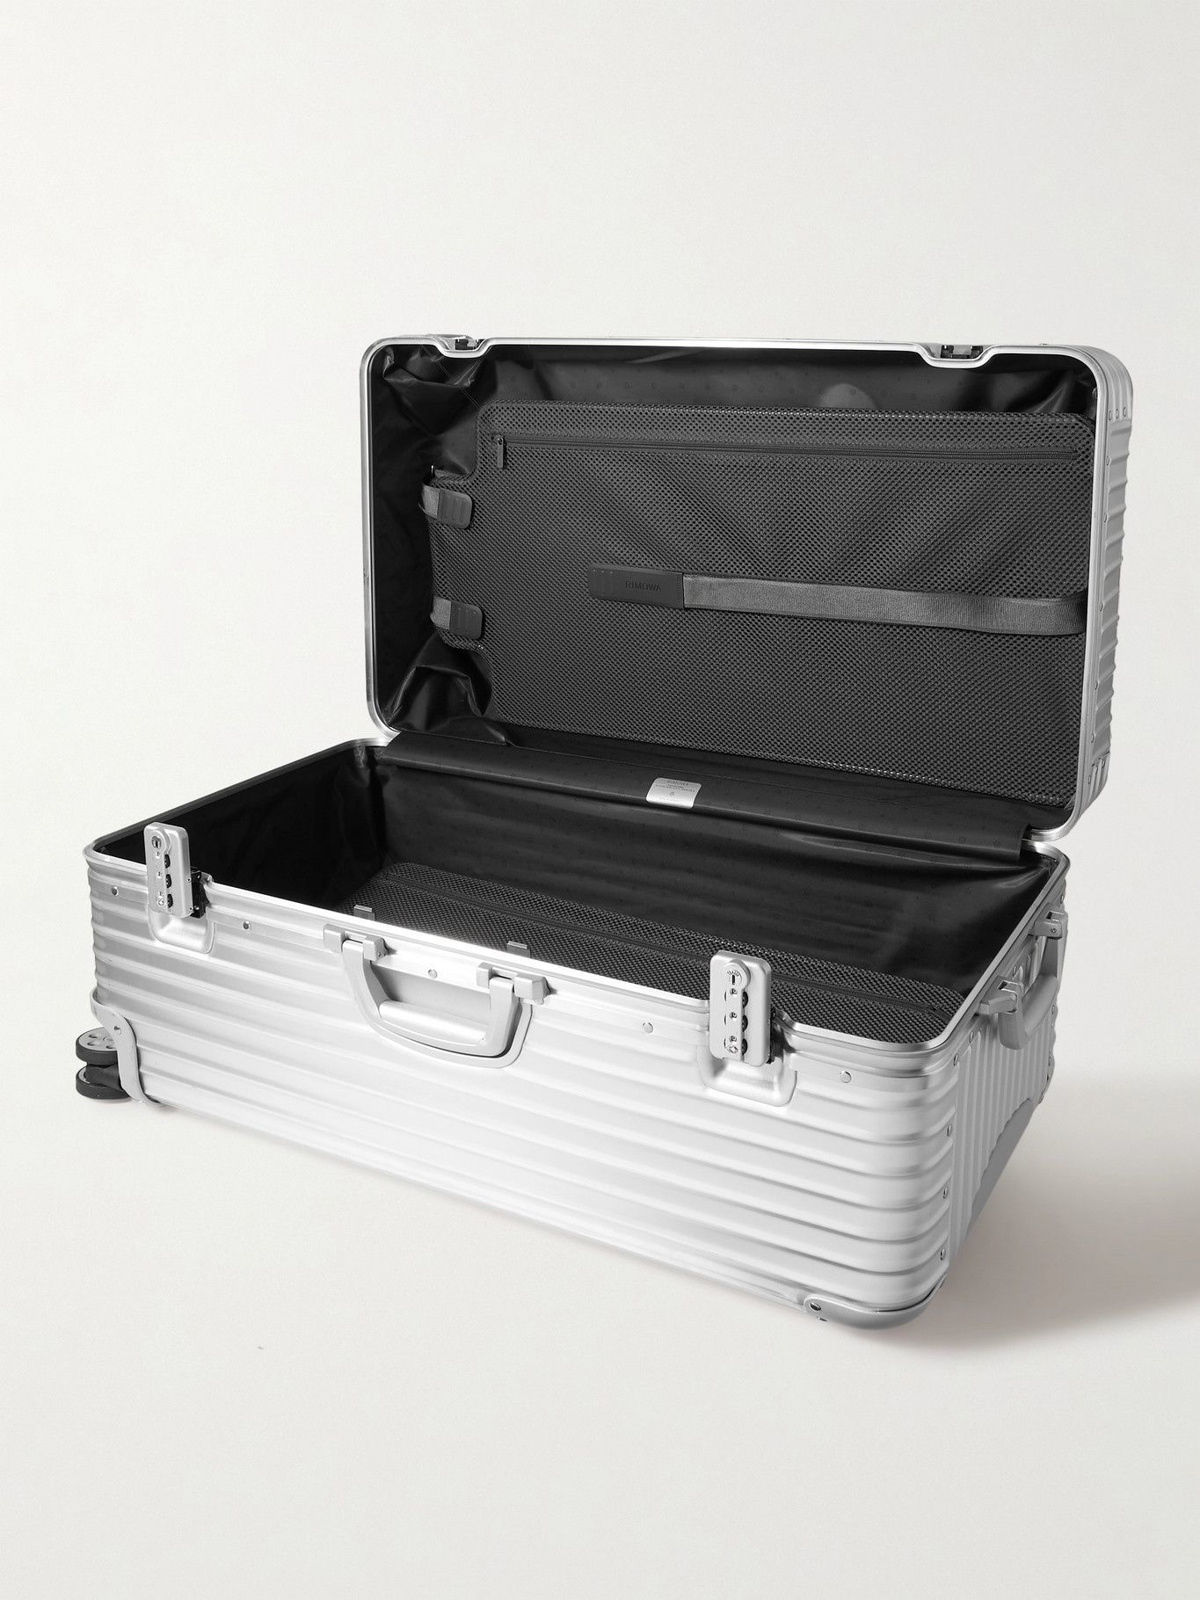 Original Trunk Plus Large Aluminium Suitcase, Silver